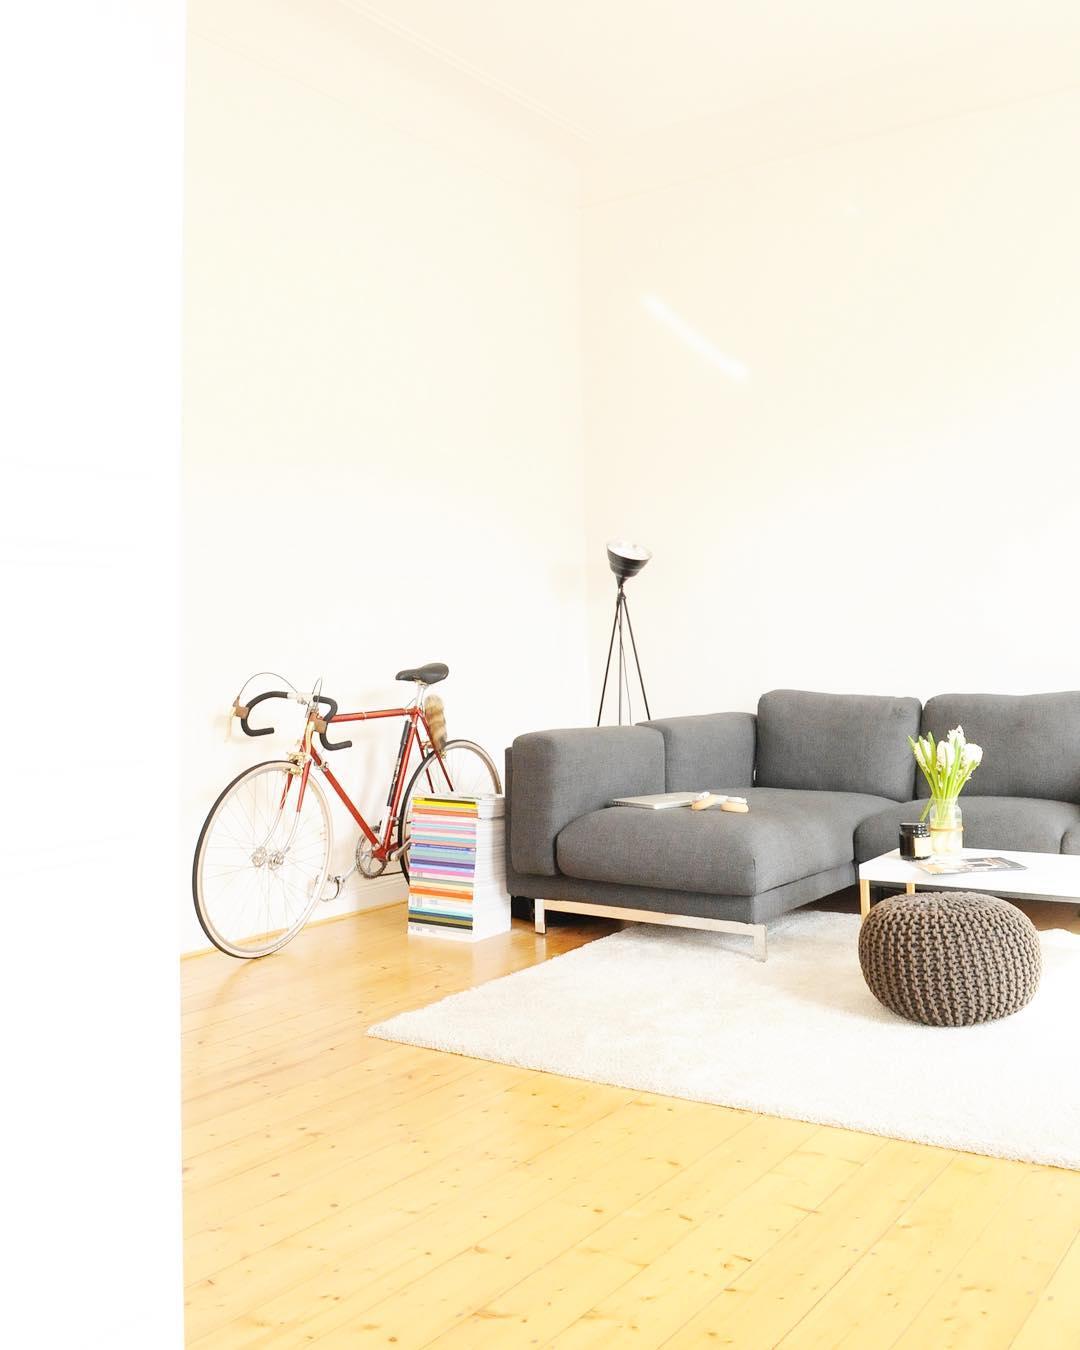 Wohnzimmer mit Fahrrad #livingroom #altbau 